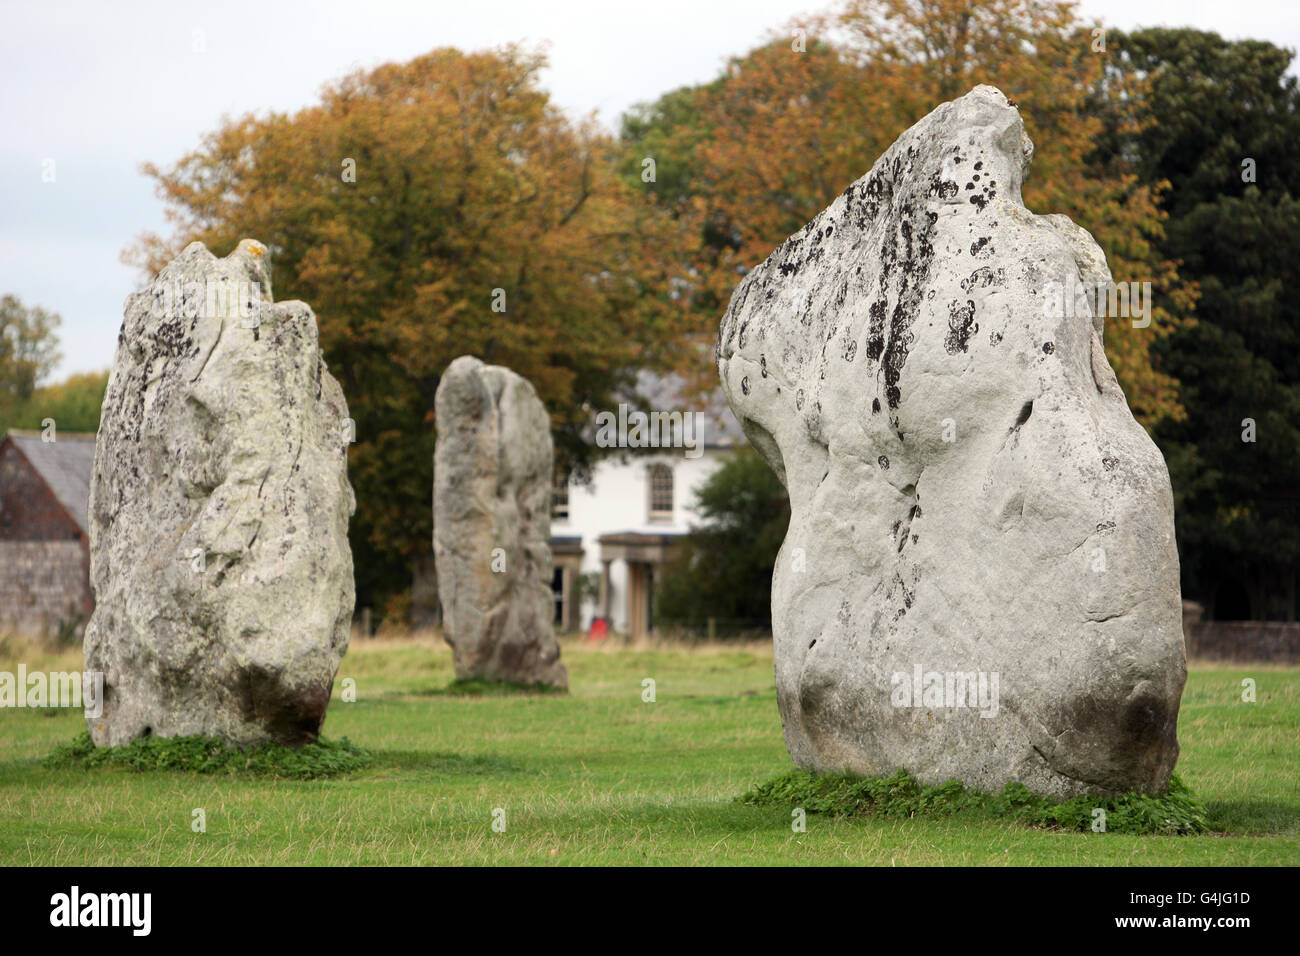 Teil des prähistorischen Steinkreises bei Avebury in Wiltshire. Stockfoto